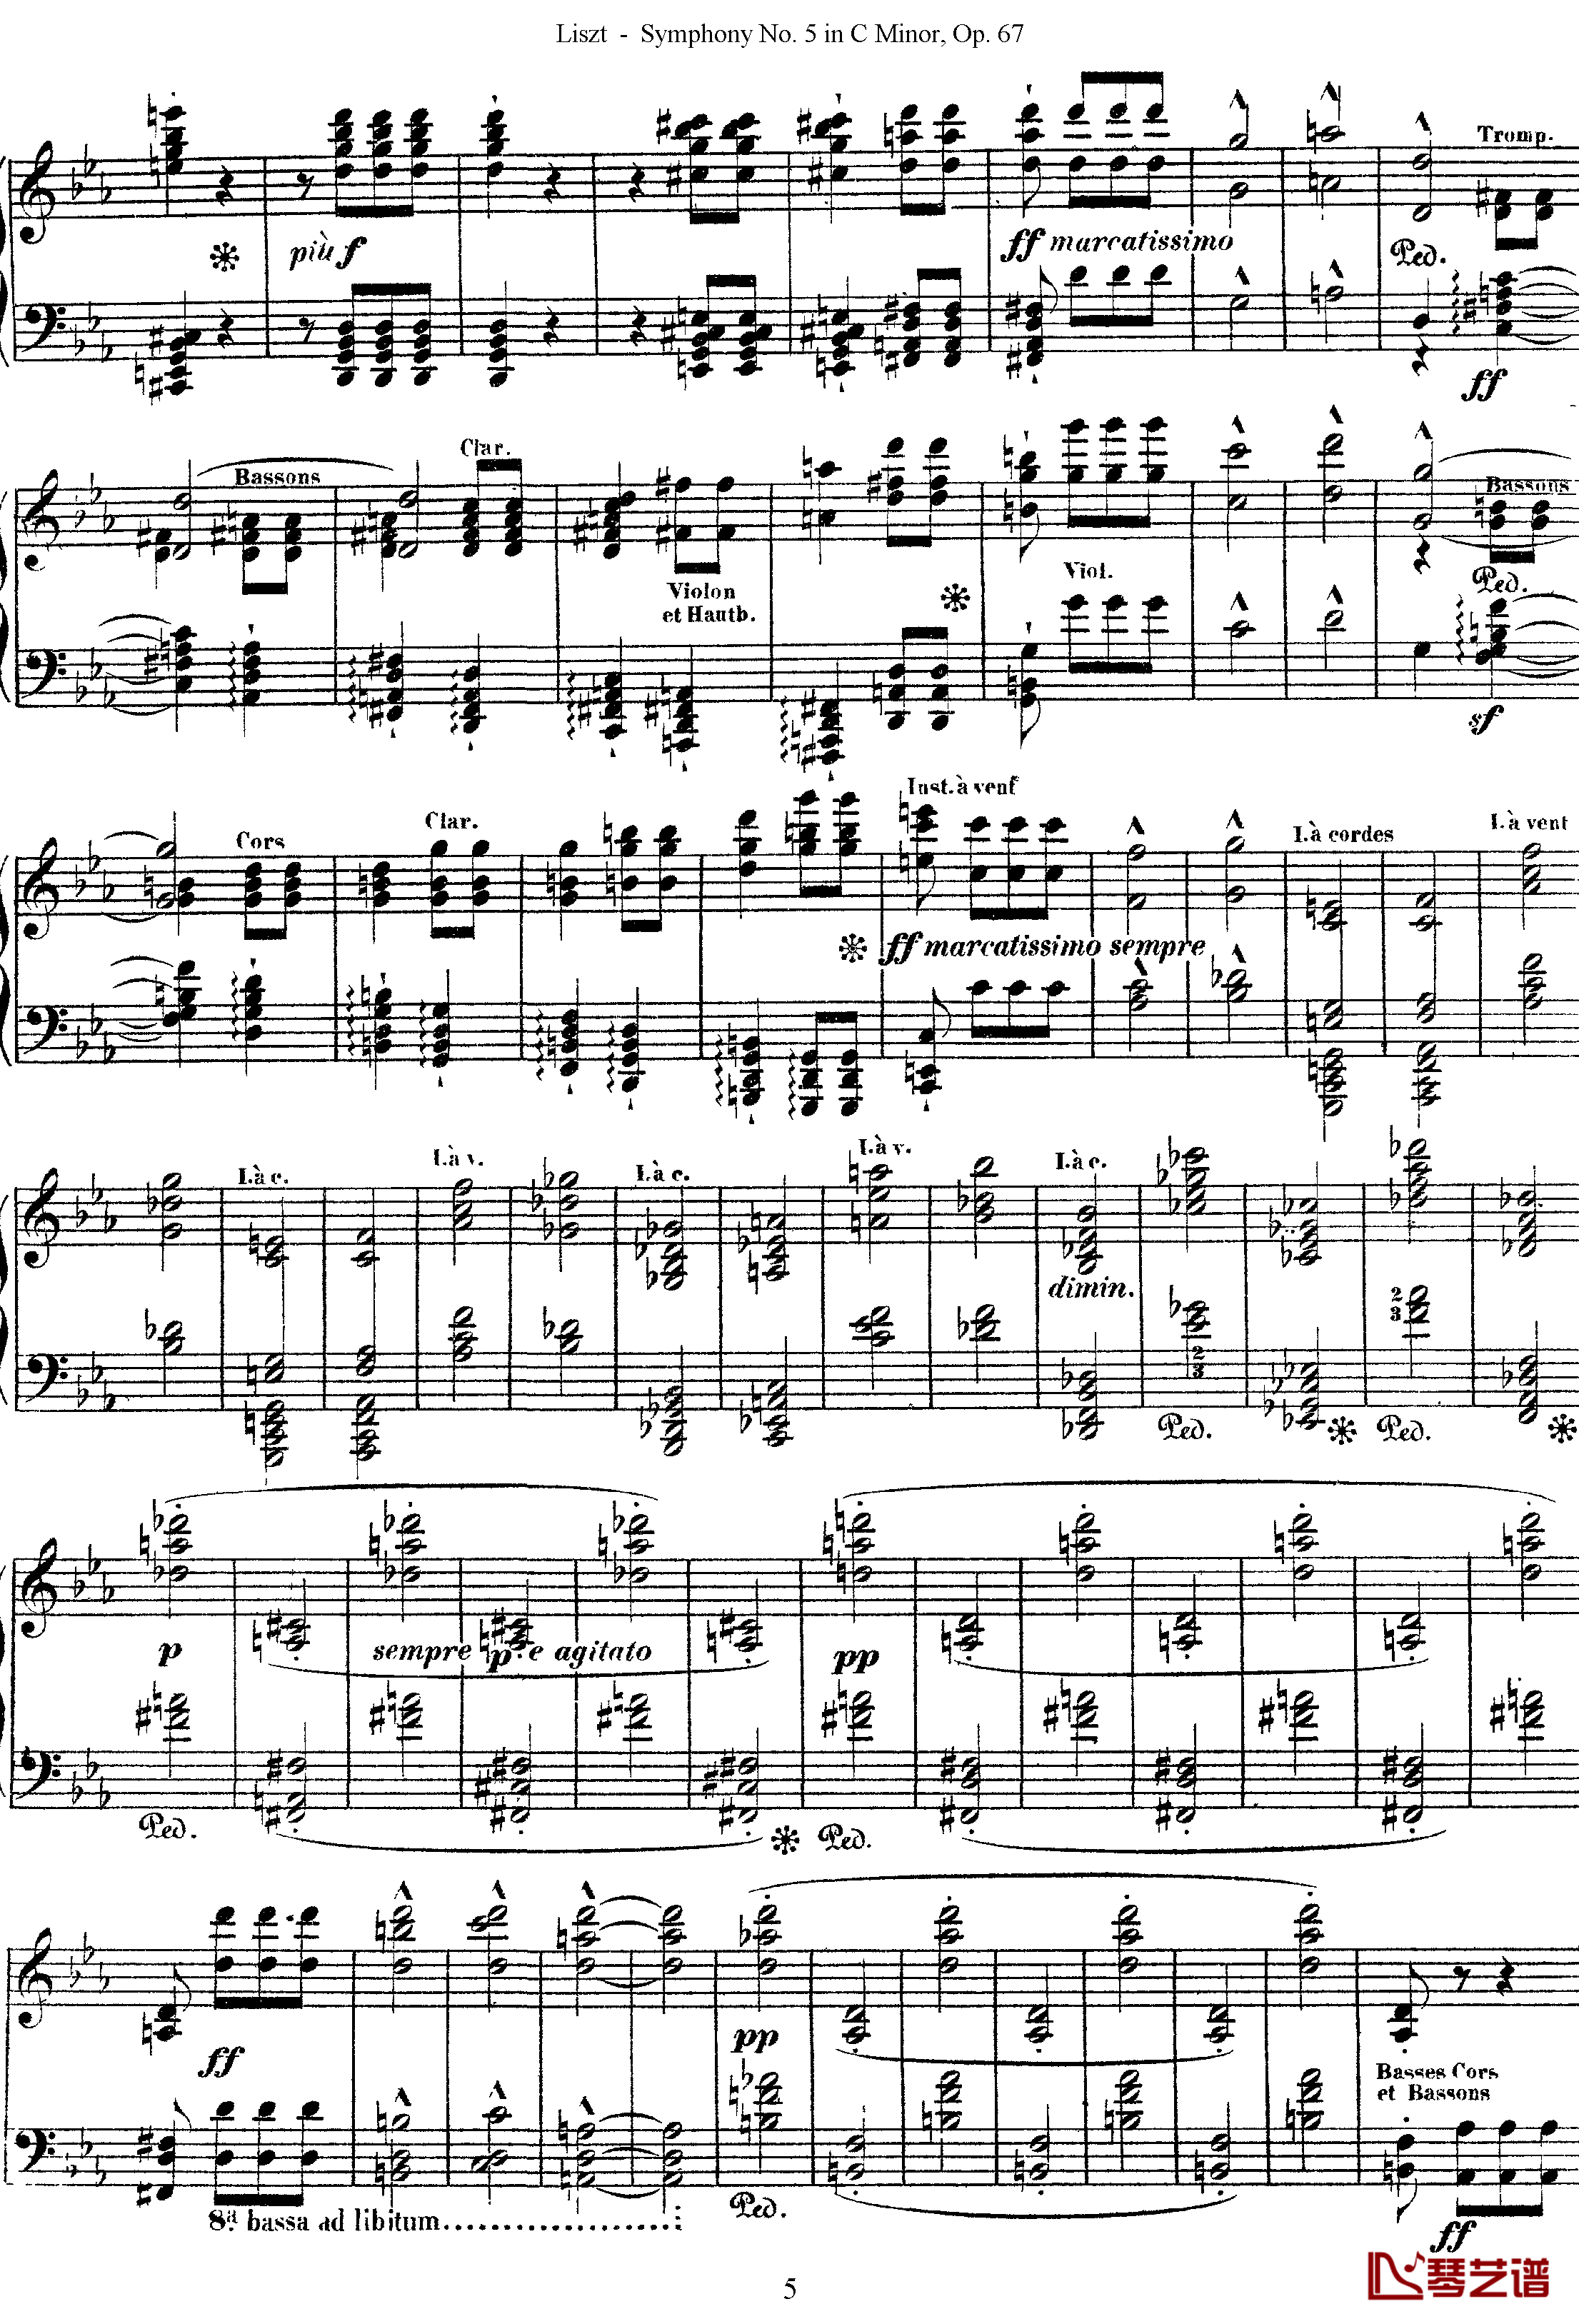 第五交响乐的钢琴曲钢琴谱-李斯特-李斯特改编自贝多芬5